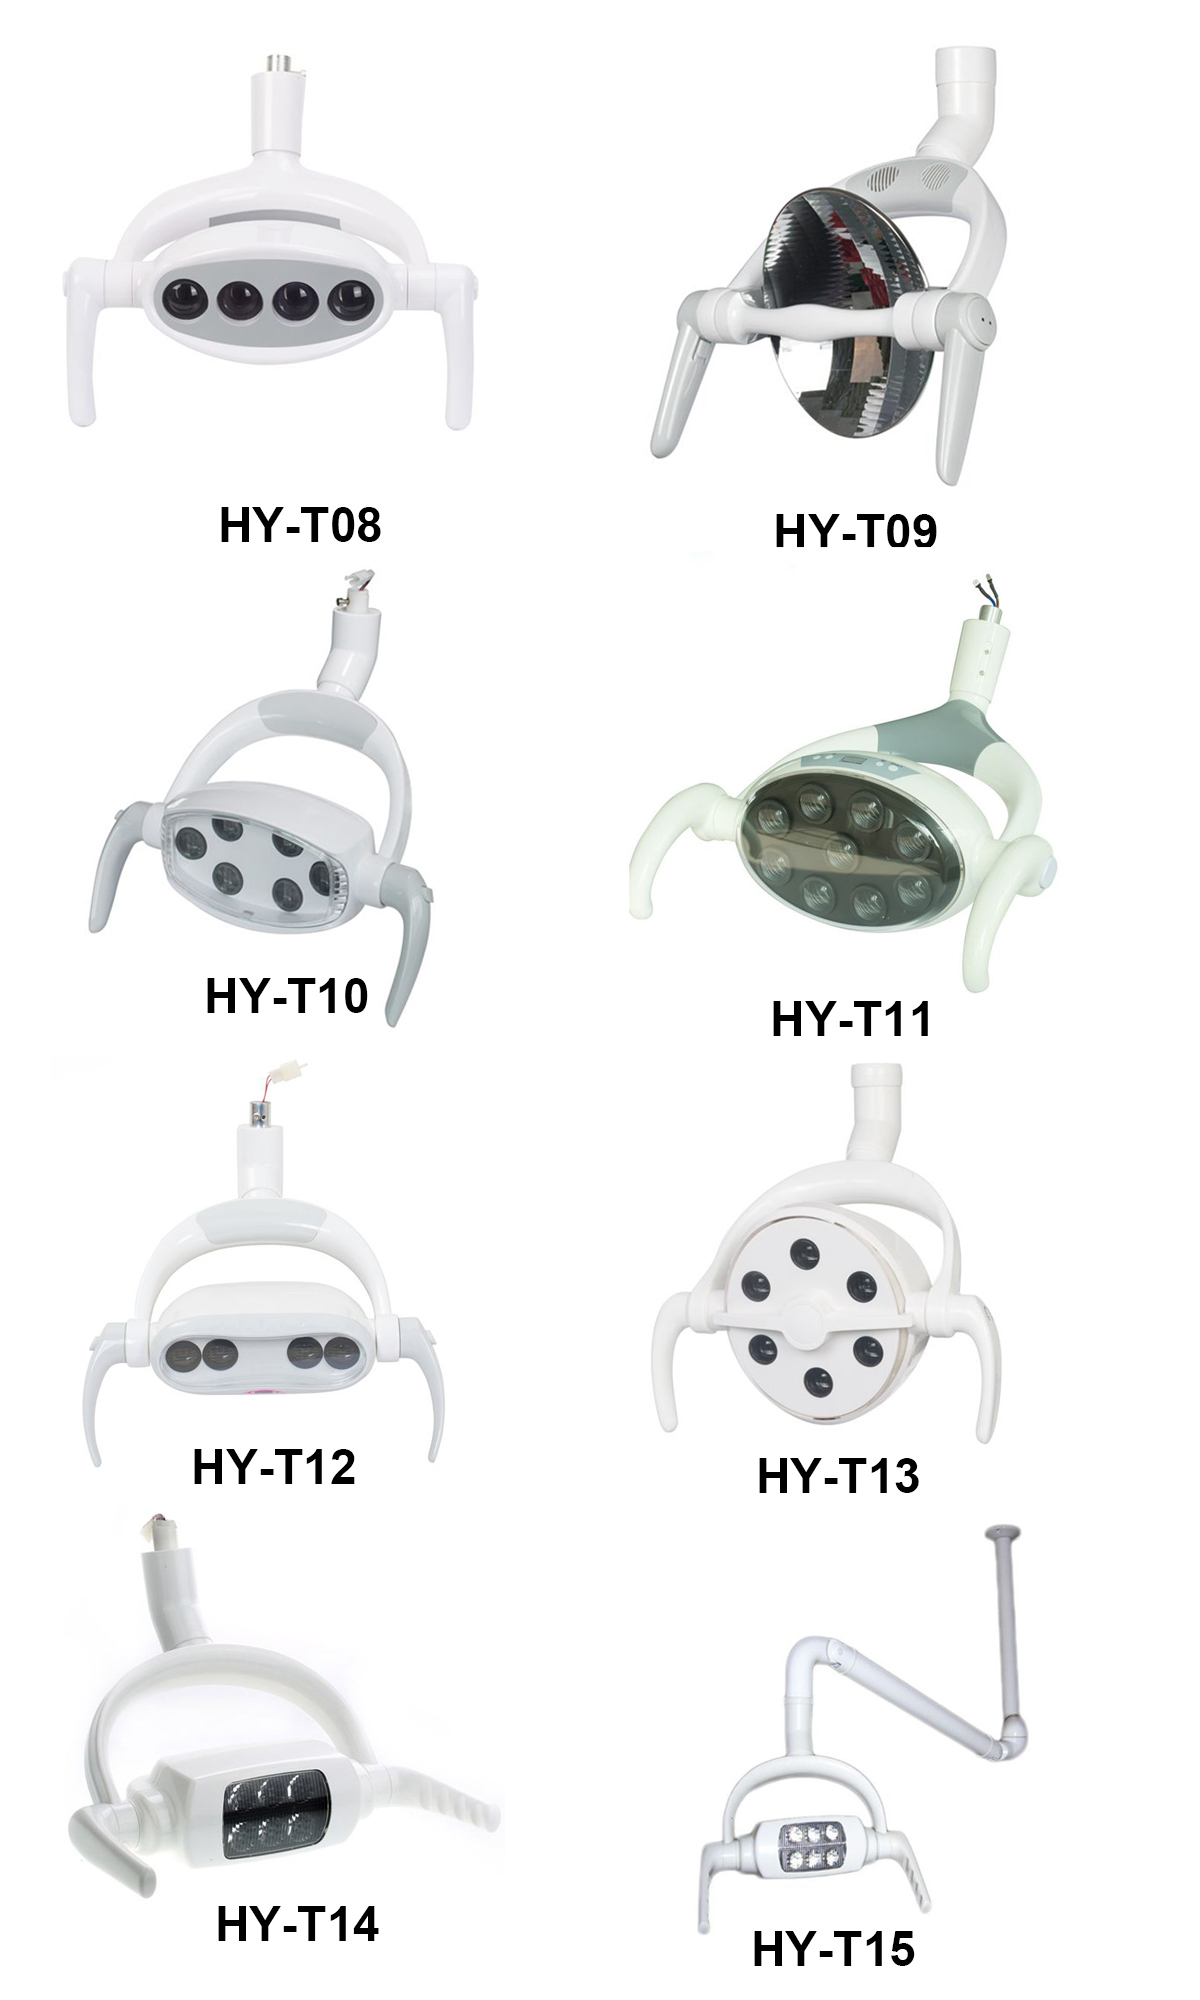 HY-T11 Dental LED Lamp